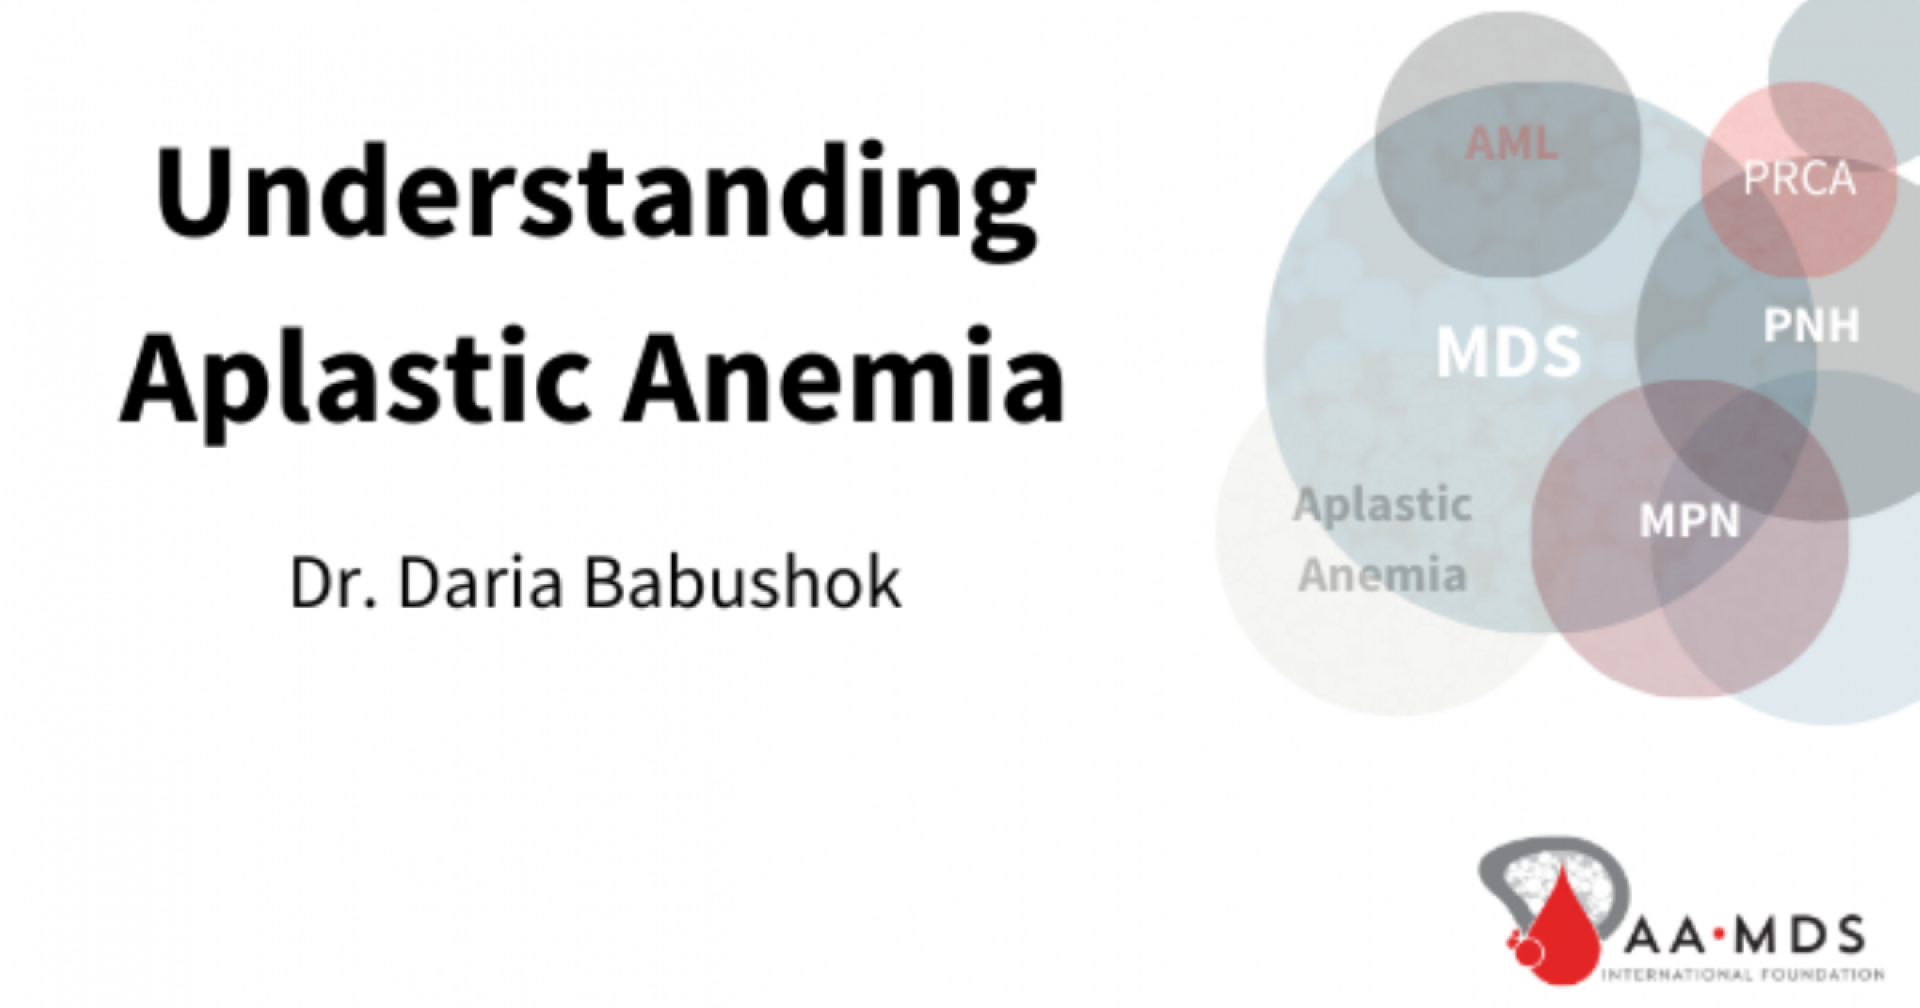 Understanding aplastic anemia